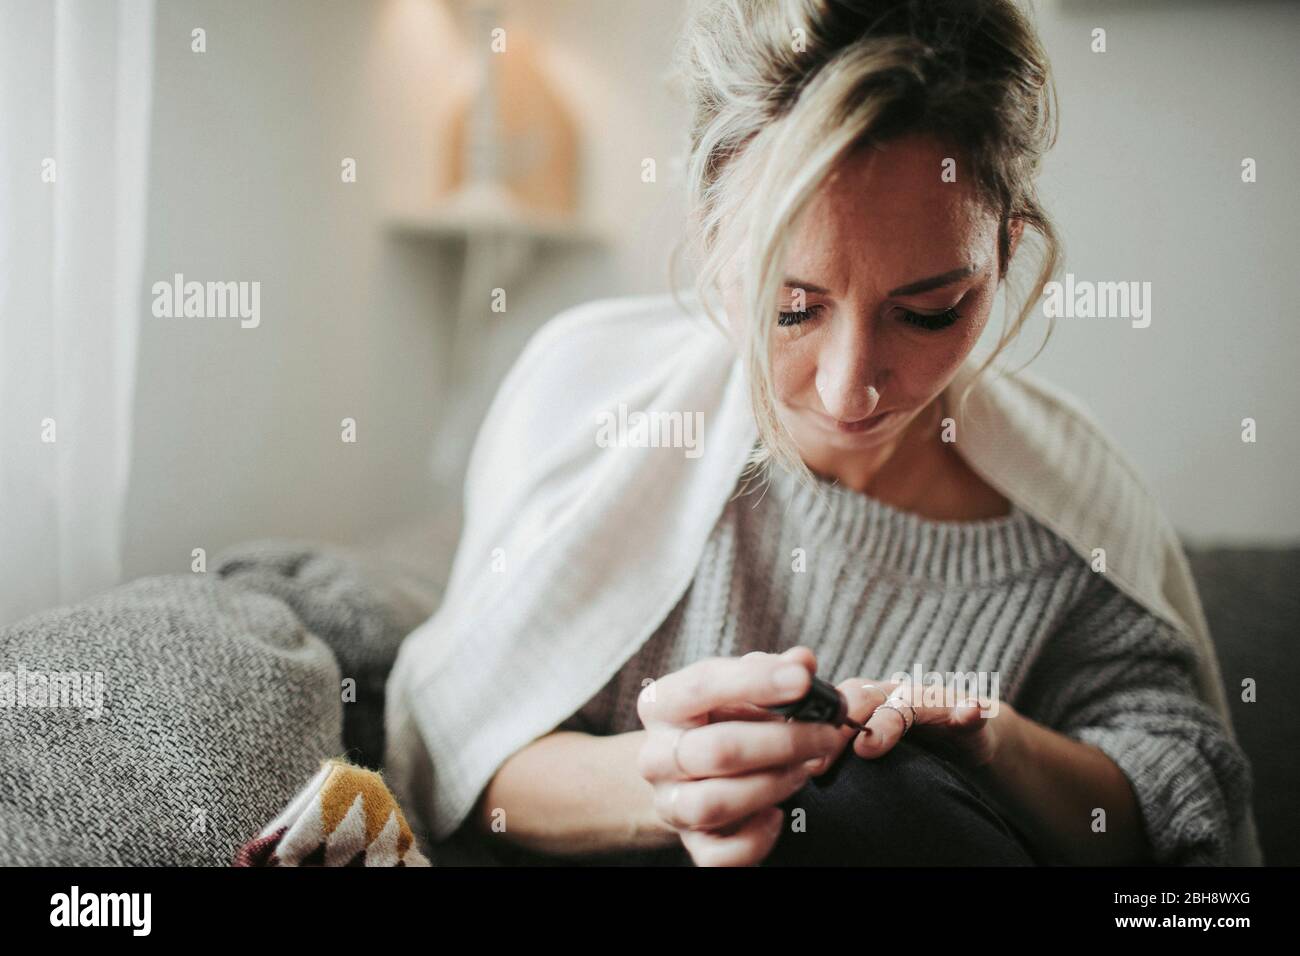 Frau sitzt entspannt auf der Couch, lackiert sich die Fingernägel Stock Photo